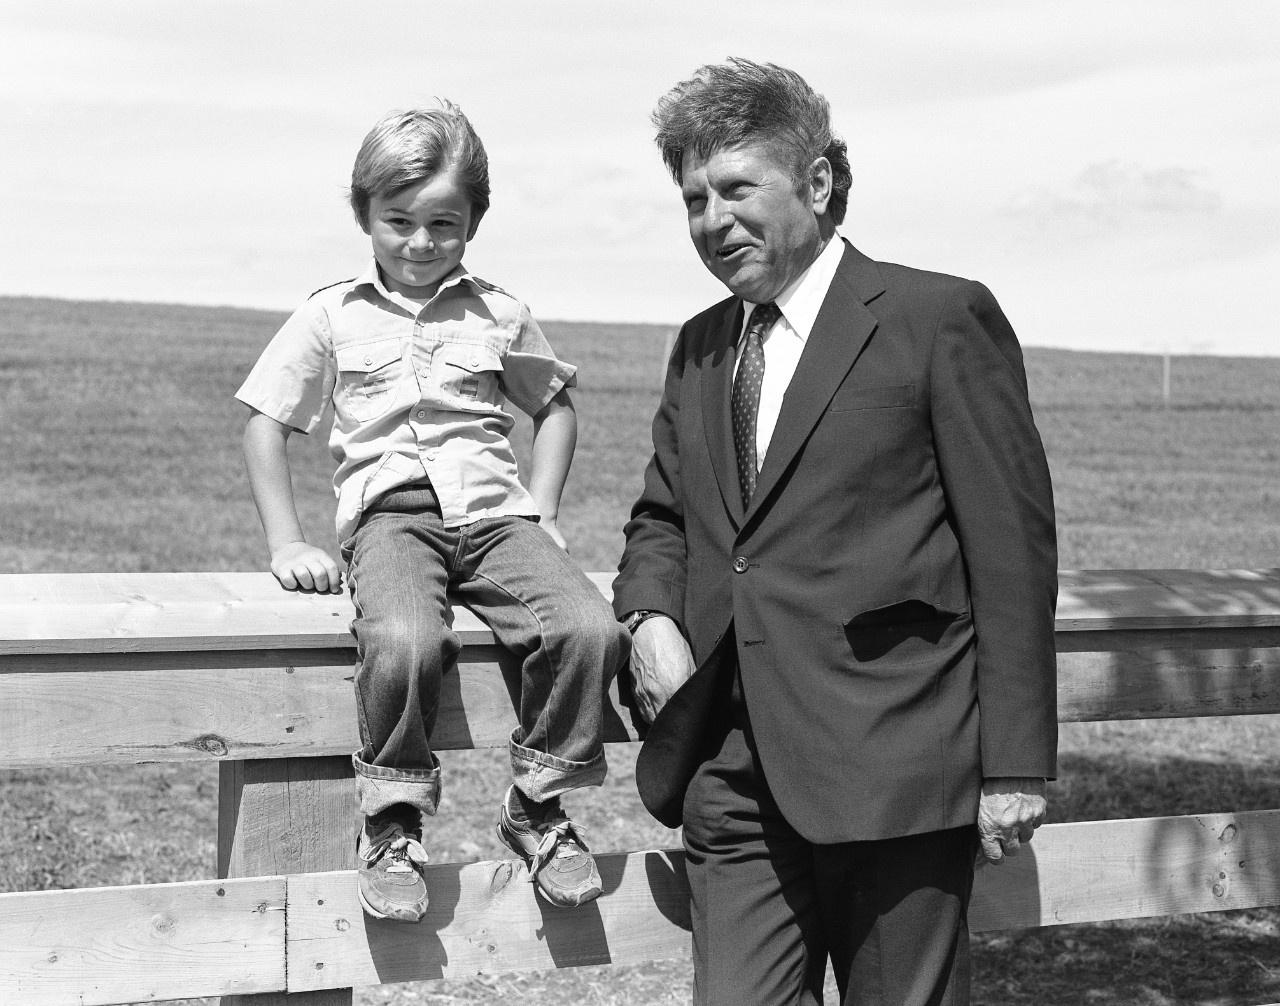 Allan J. MacEachen (right) stands with child